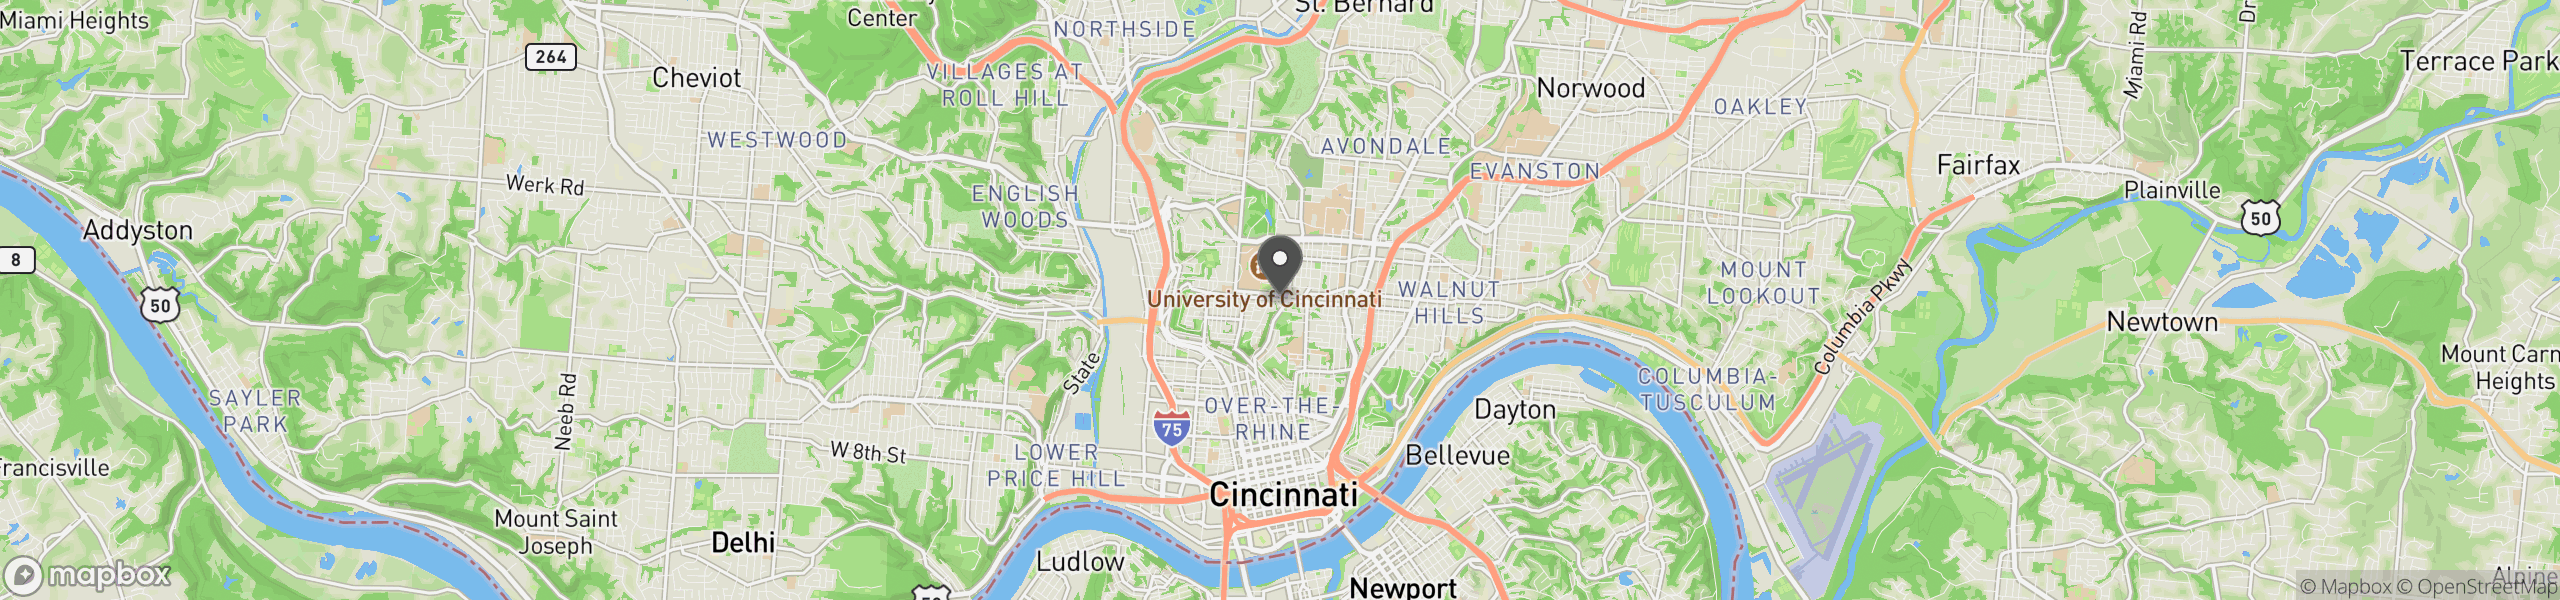 Cincinnati, OH 45219